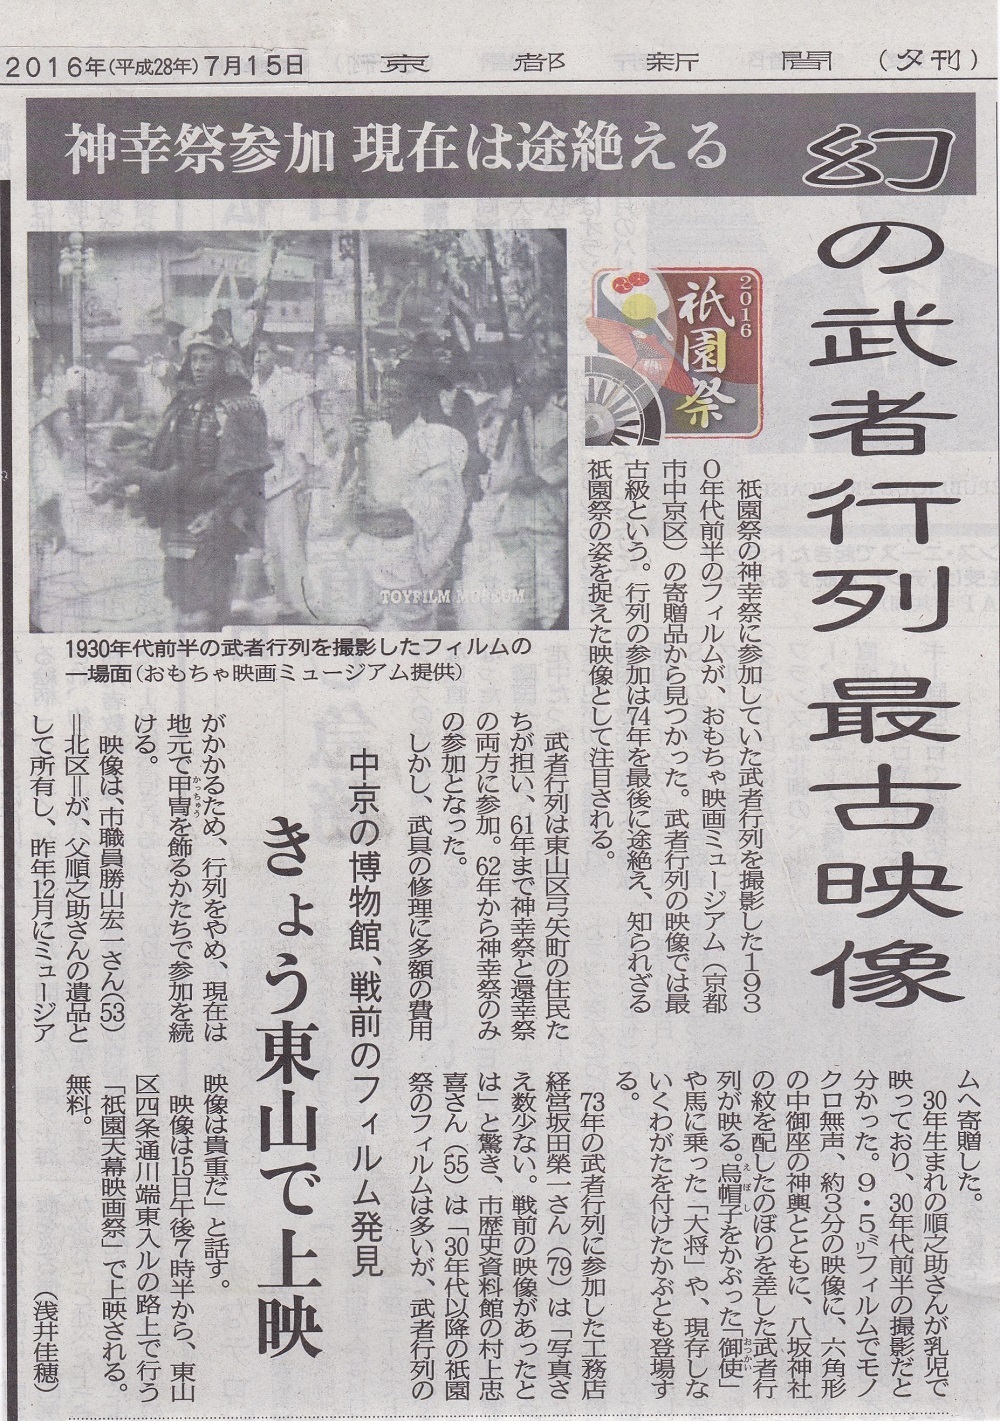 京都新聞夕刊に、祇園祭に関する貴重な映像について書いていただきました